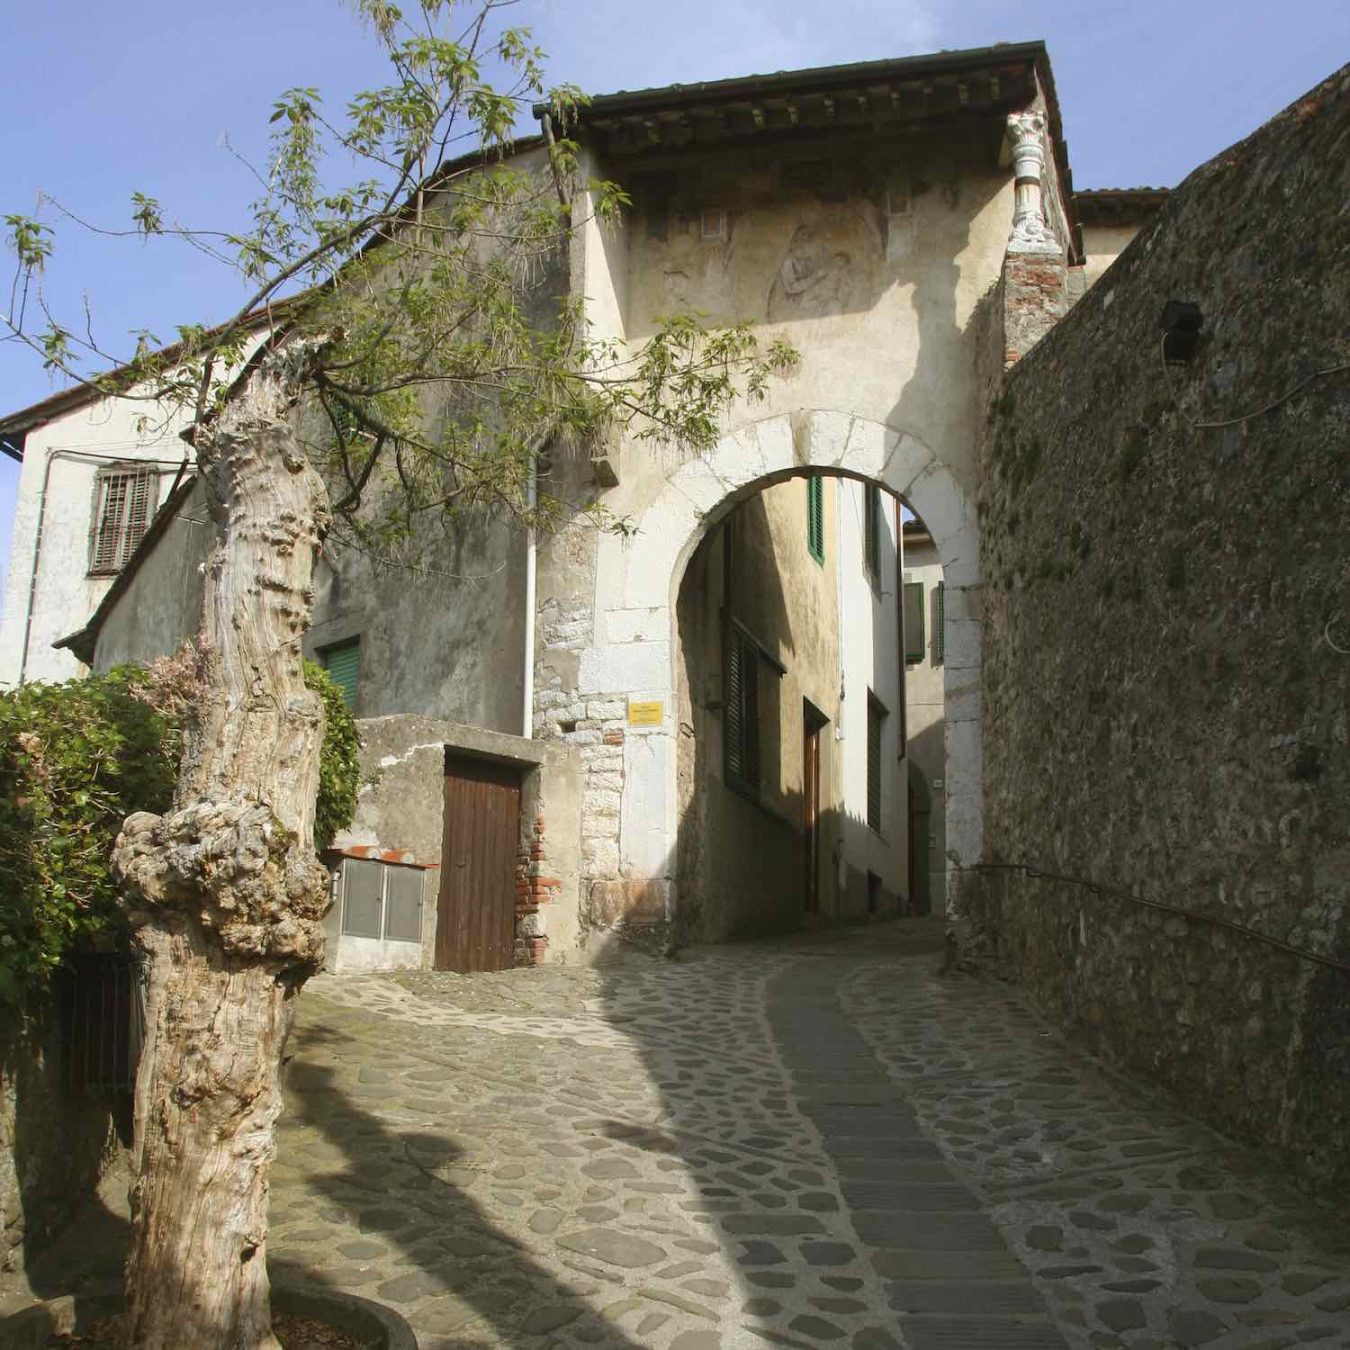 Coreglia Antelminelli è uno dei 23 Borghi più belli d'Italia in Toscana. Si trova in Garfagnana (LU) ed è famosa per la lavorazione del gesso